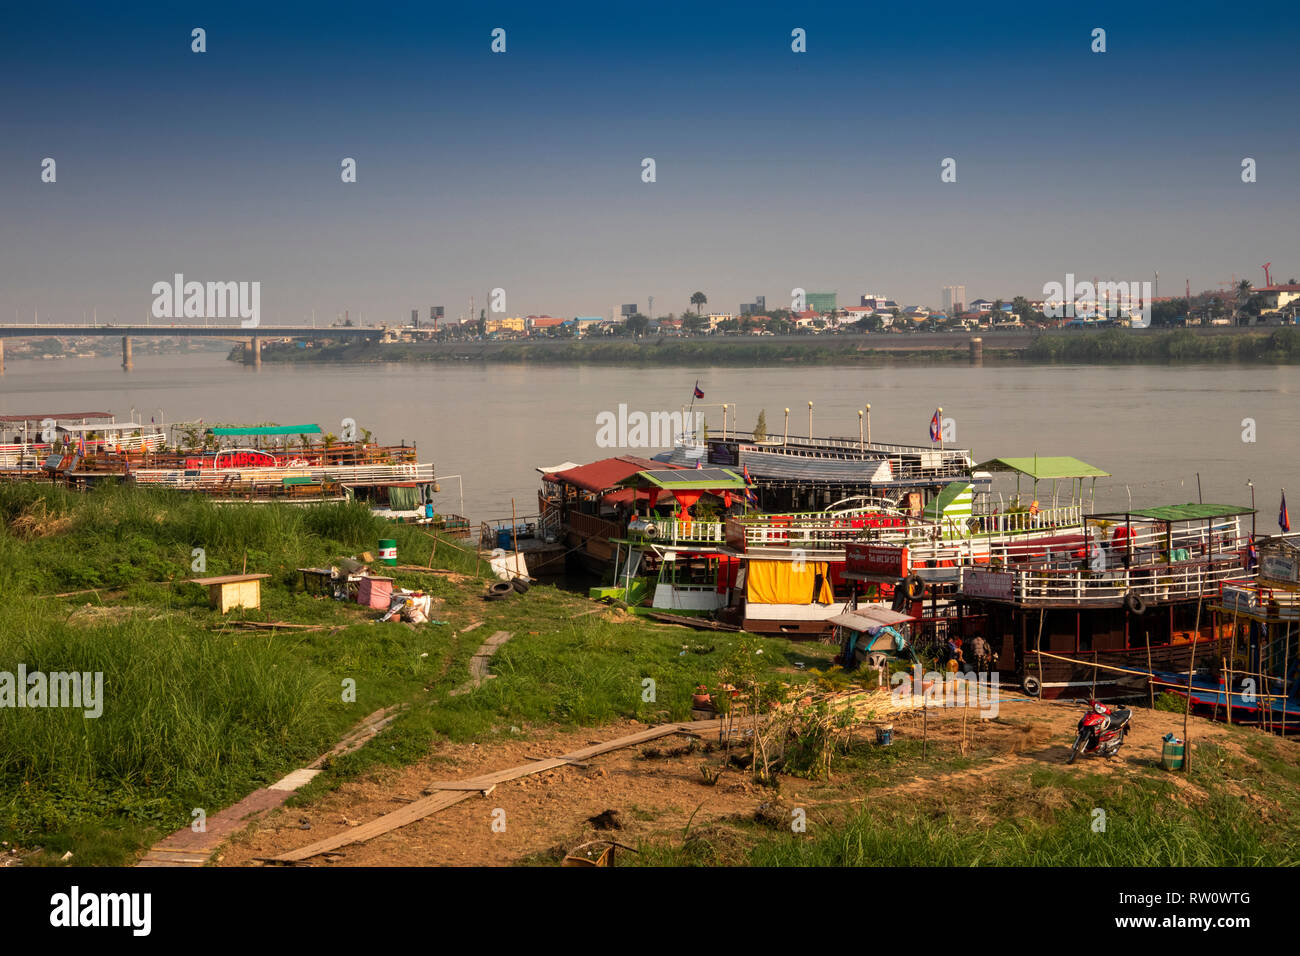 Kambodscha, Phnom Penh, Stadtzentrum, sisowath Quay, River Cruise Boote gefesselt am Flussufer in der Nähe von Chroy Changvar Brücke Stockfoto